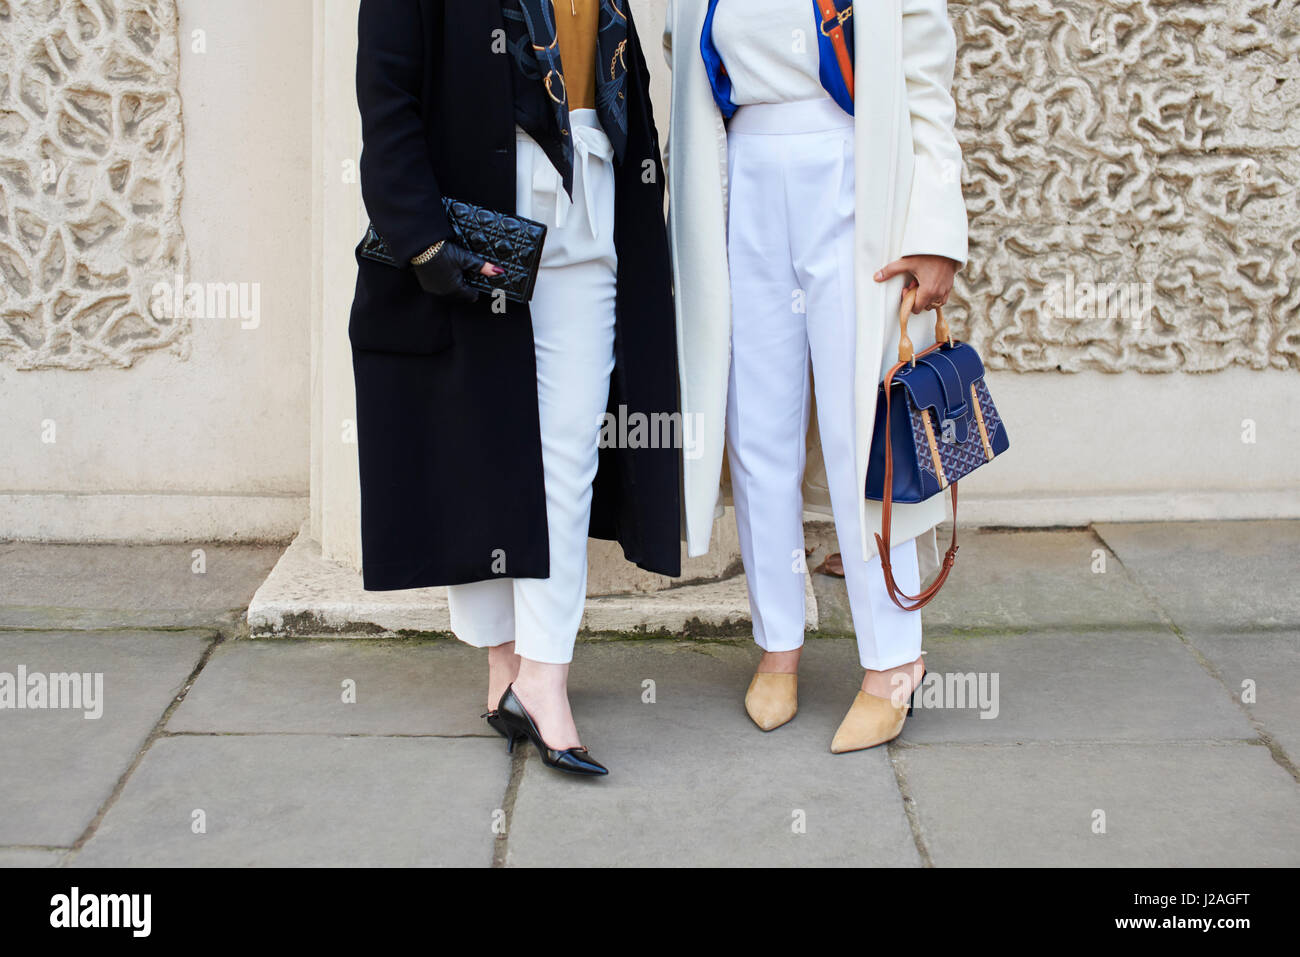 Londres - Février 2017 : deux femmes dans la rue, tenant les sacs à main,  un sac d'embrayage Chanel sur la gauche, tandis que la femme sur la droite  porte une ceinture